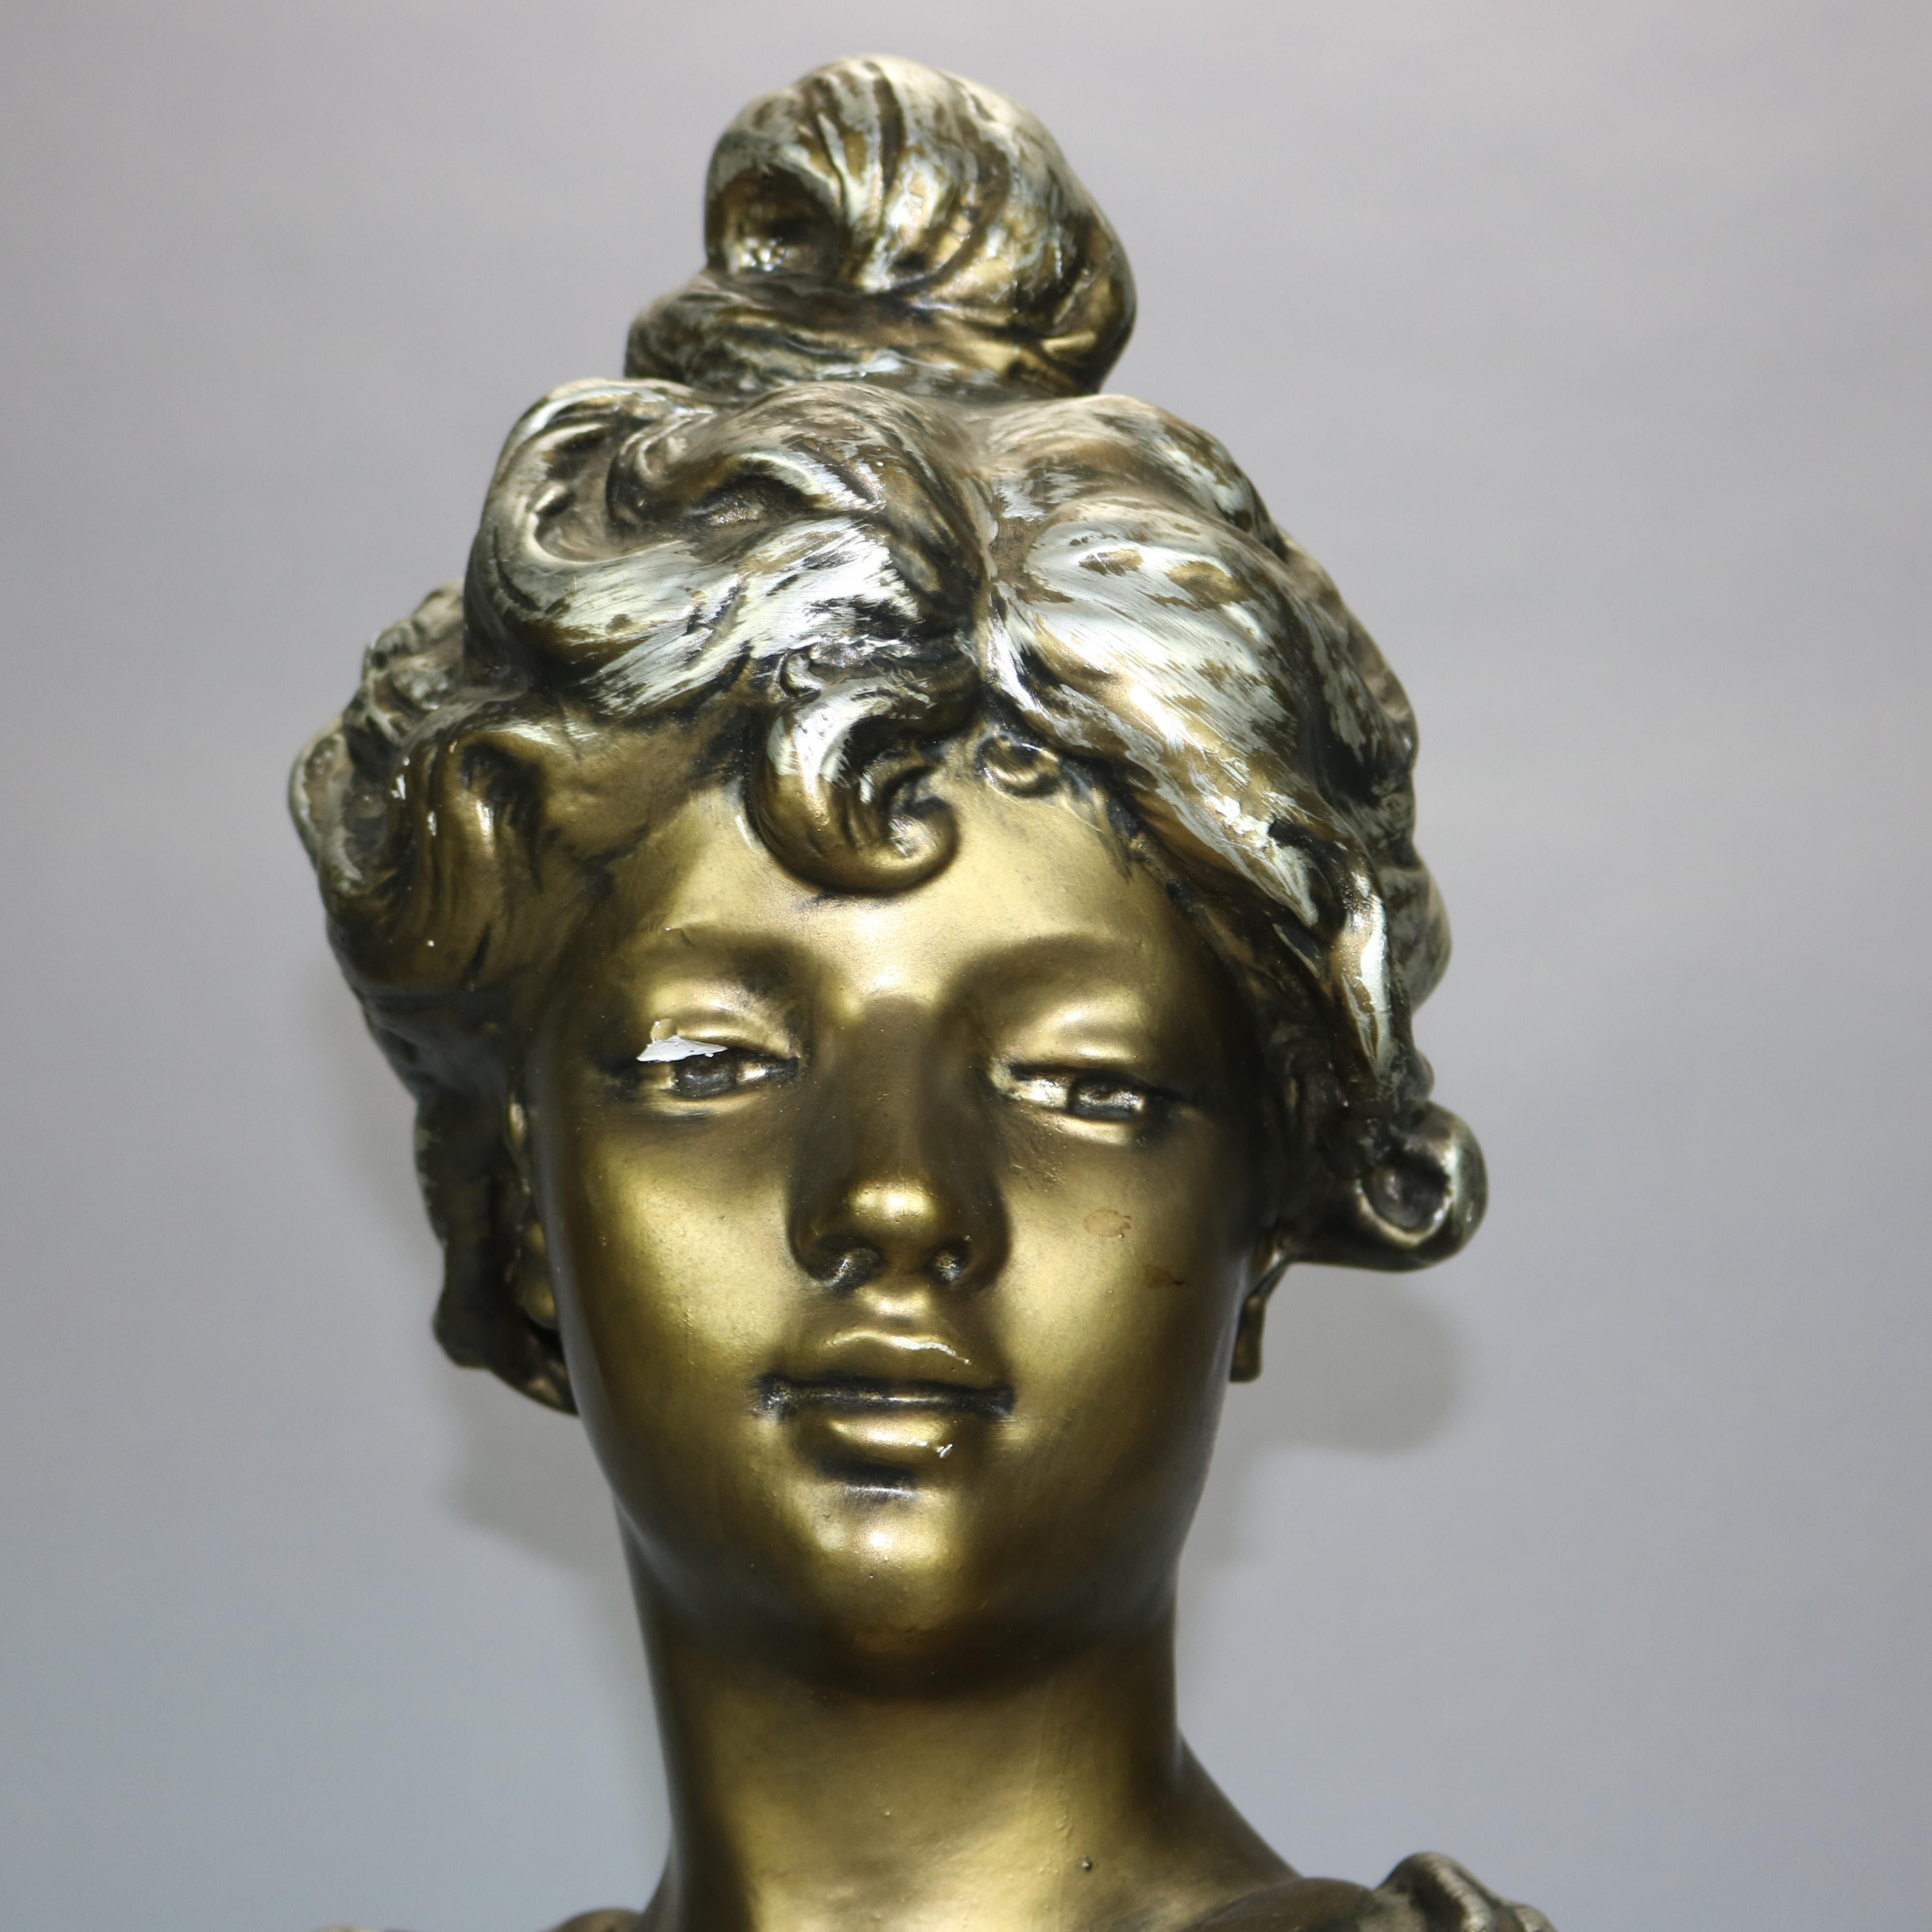 An antique Art Nouveau sculpture offers gilt plaster depicting portrait bust of a woman on plinth, unsigned, c1910

Measures: 23.5